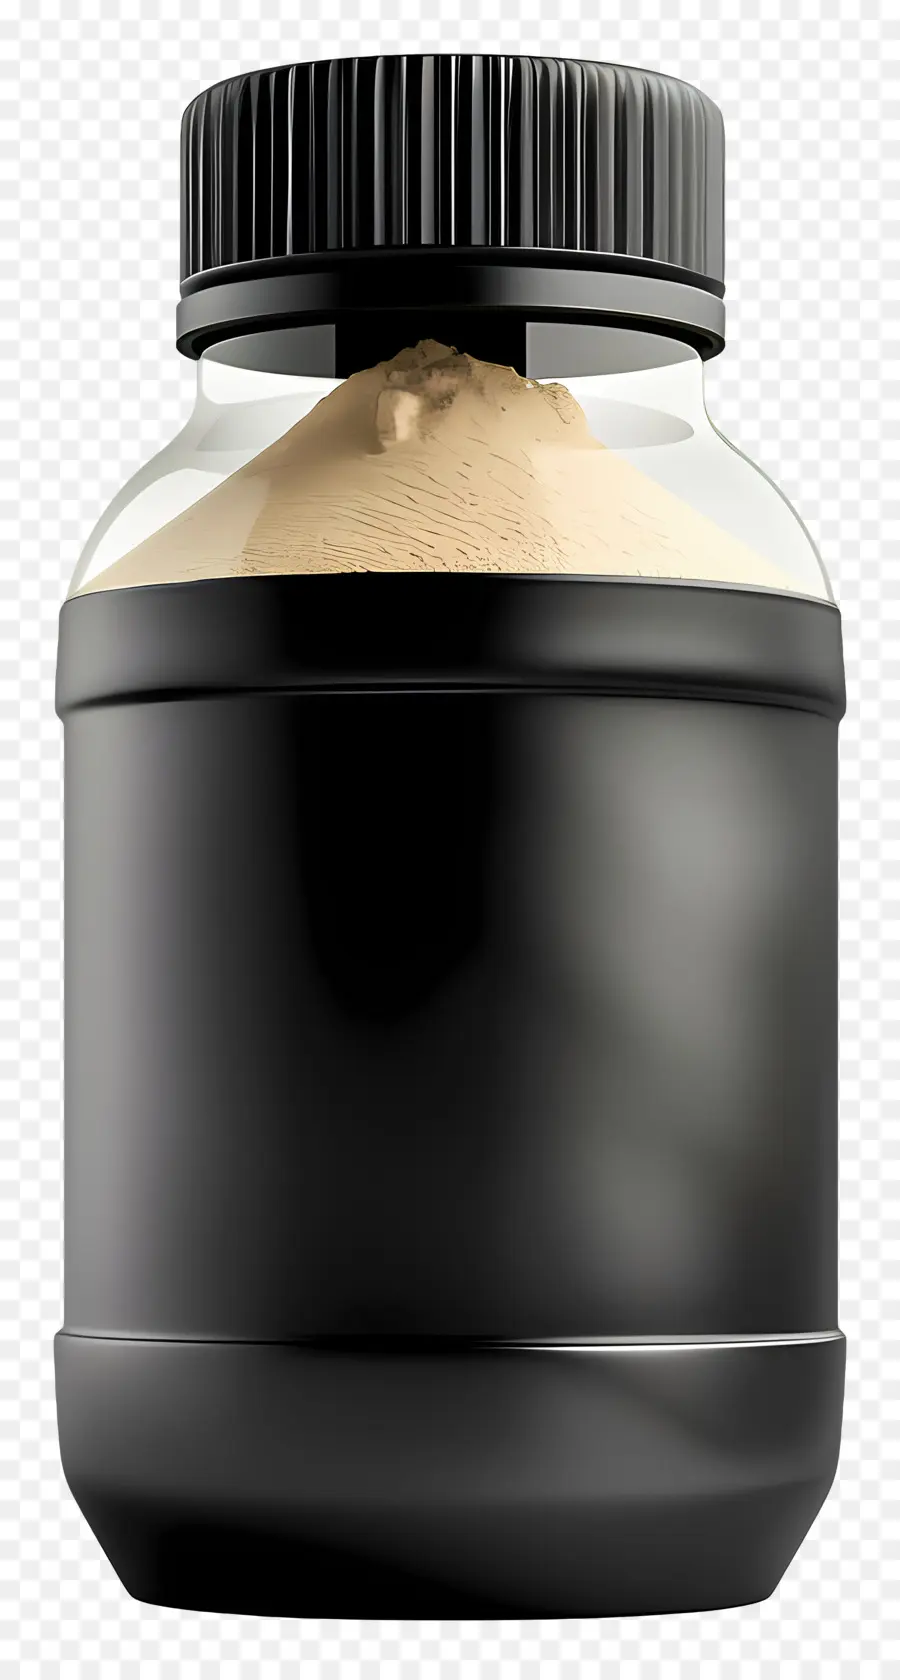 Proteinpulver schwarzes Kunststoff -Glas -Kappenspeicherbehälterverpackung - Schwarzes Plastikglas mit weißer Kappe